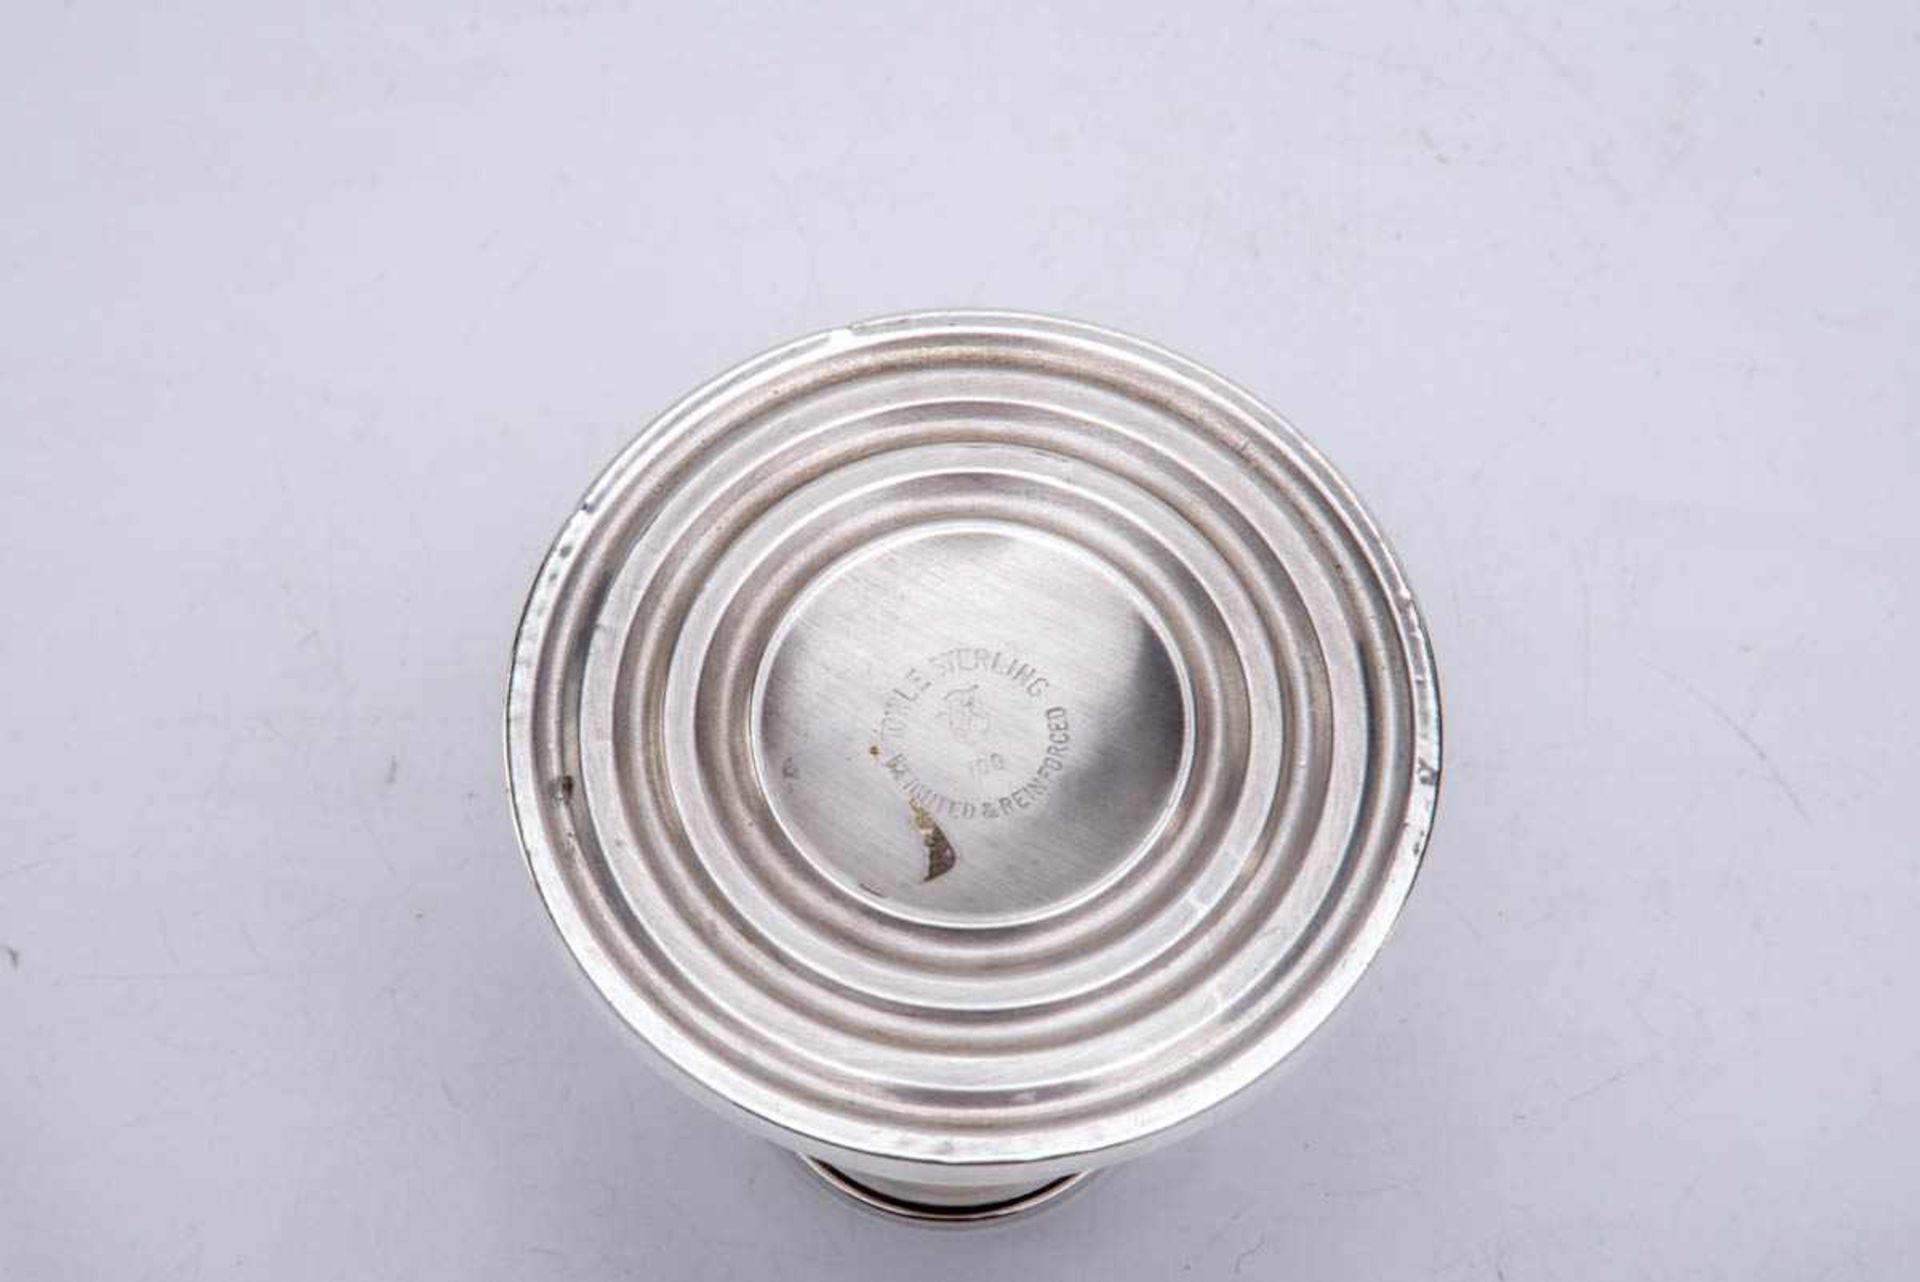 Paar Kerzenleuchter, Towle, USA Sterling-Silber, Runder leicht gewölbter Fuß, schlichte Kerzentülle. - Bild 3 aus 3